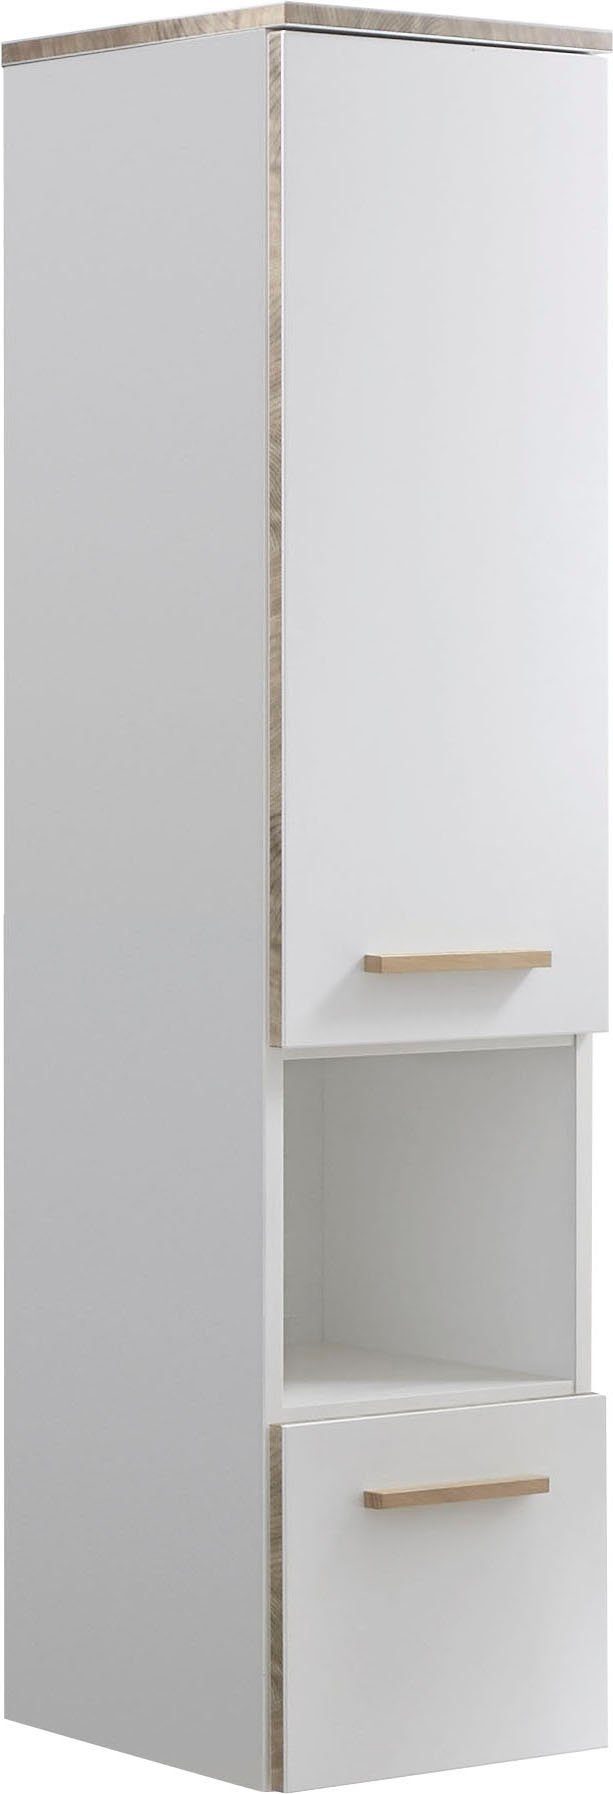 Saphir Midischrank Quickset 931 Badschrank in Weiß Glanz, 1 Tür, 1 Nische, 1 Schublade 2 Glas-Einlegeböden, inkl. Türdämpfer, 30 cm breit, 123,2 cm hoch